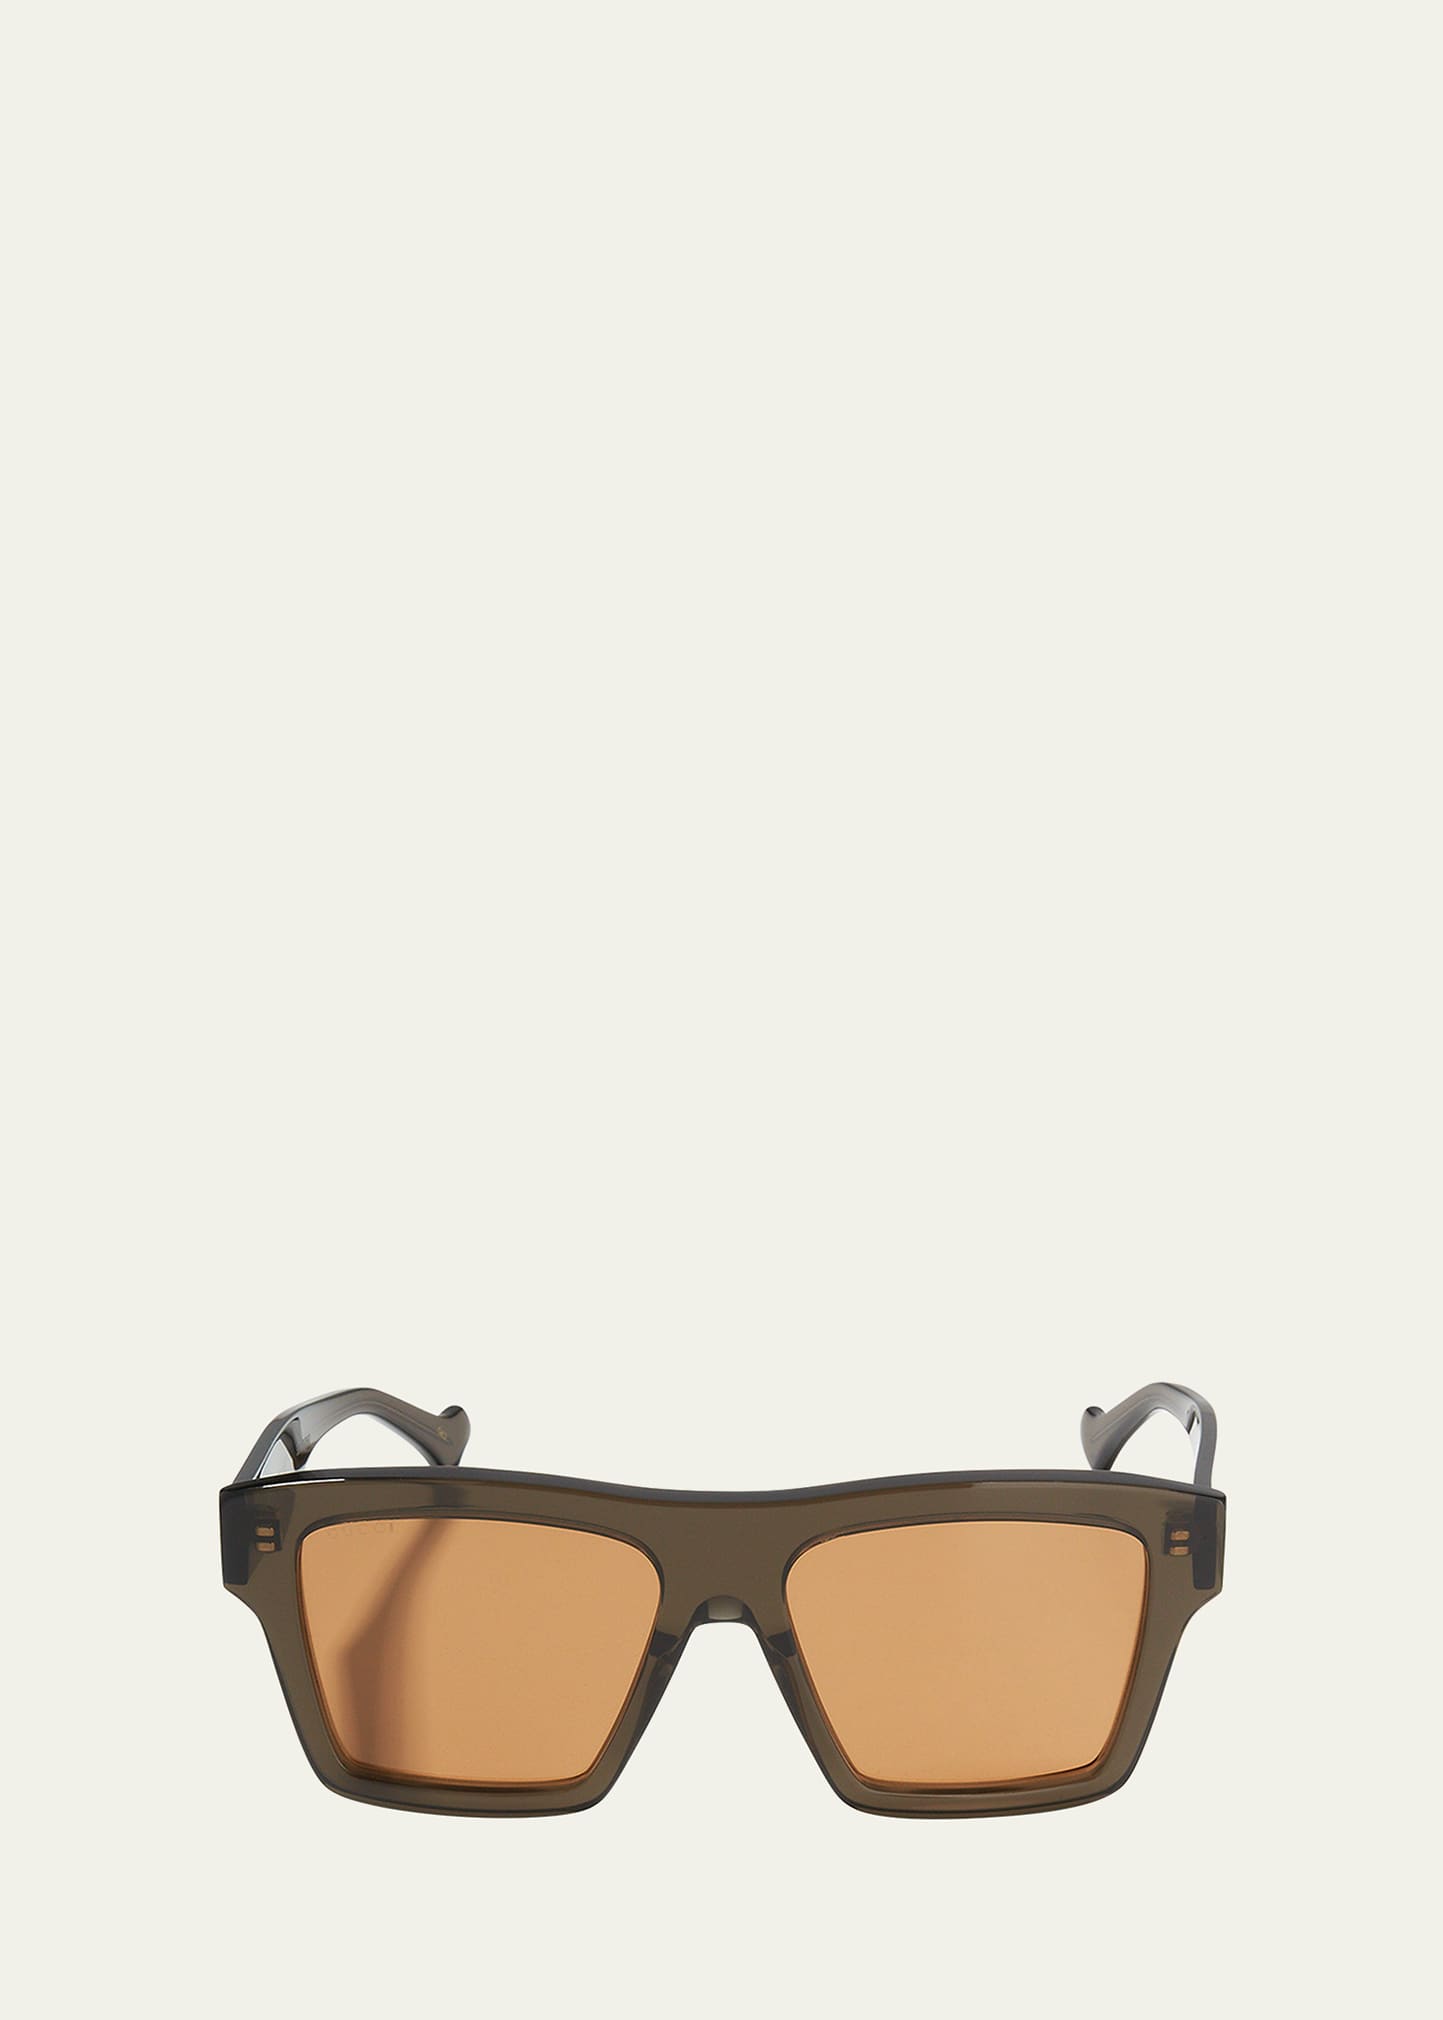 Gucci Men's Square Acetate Sunglasses In Brown